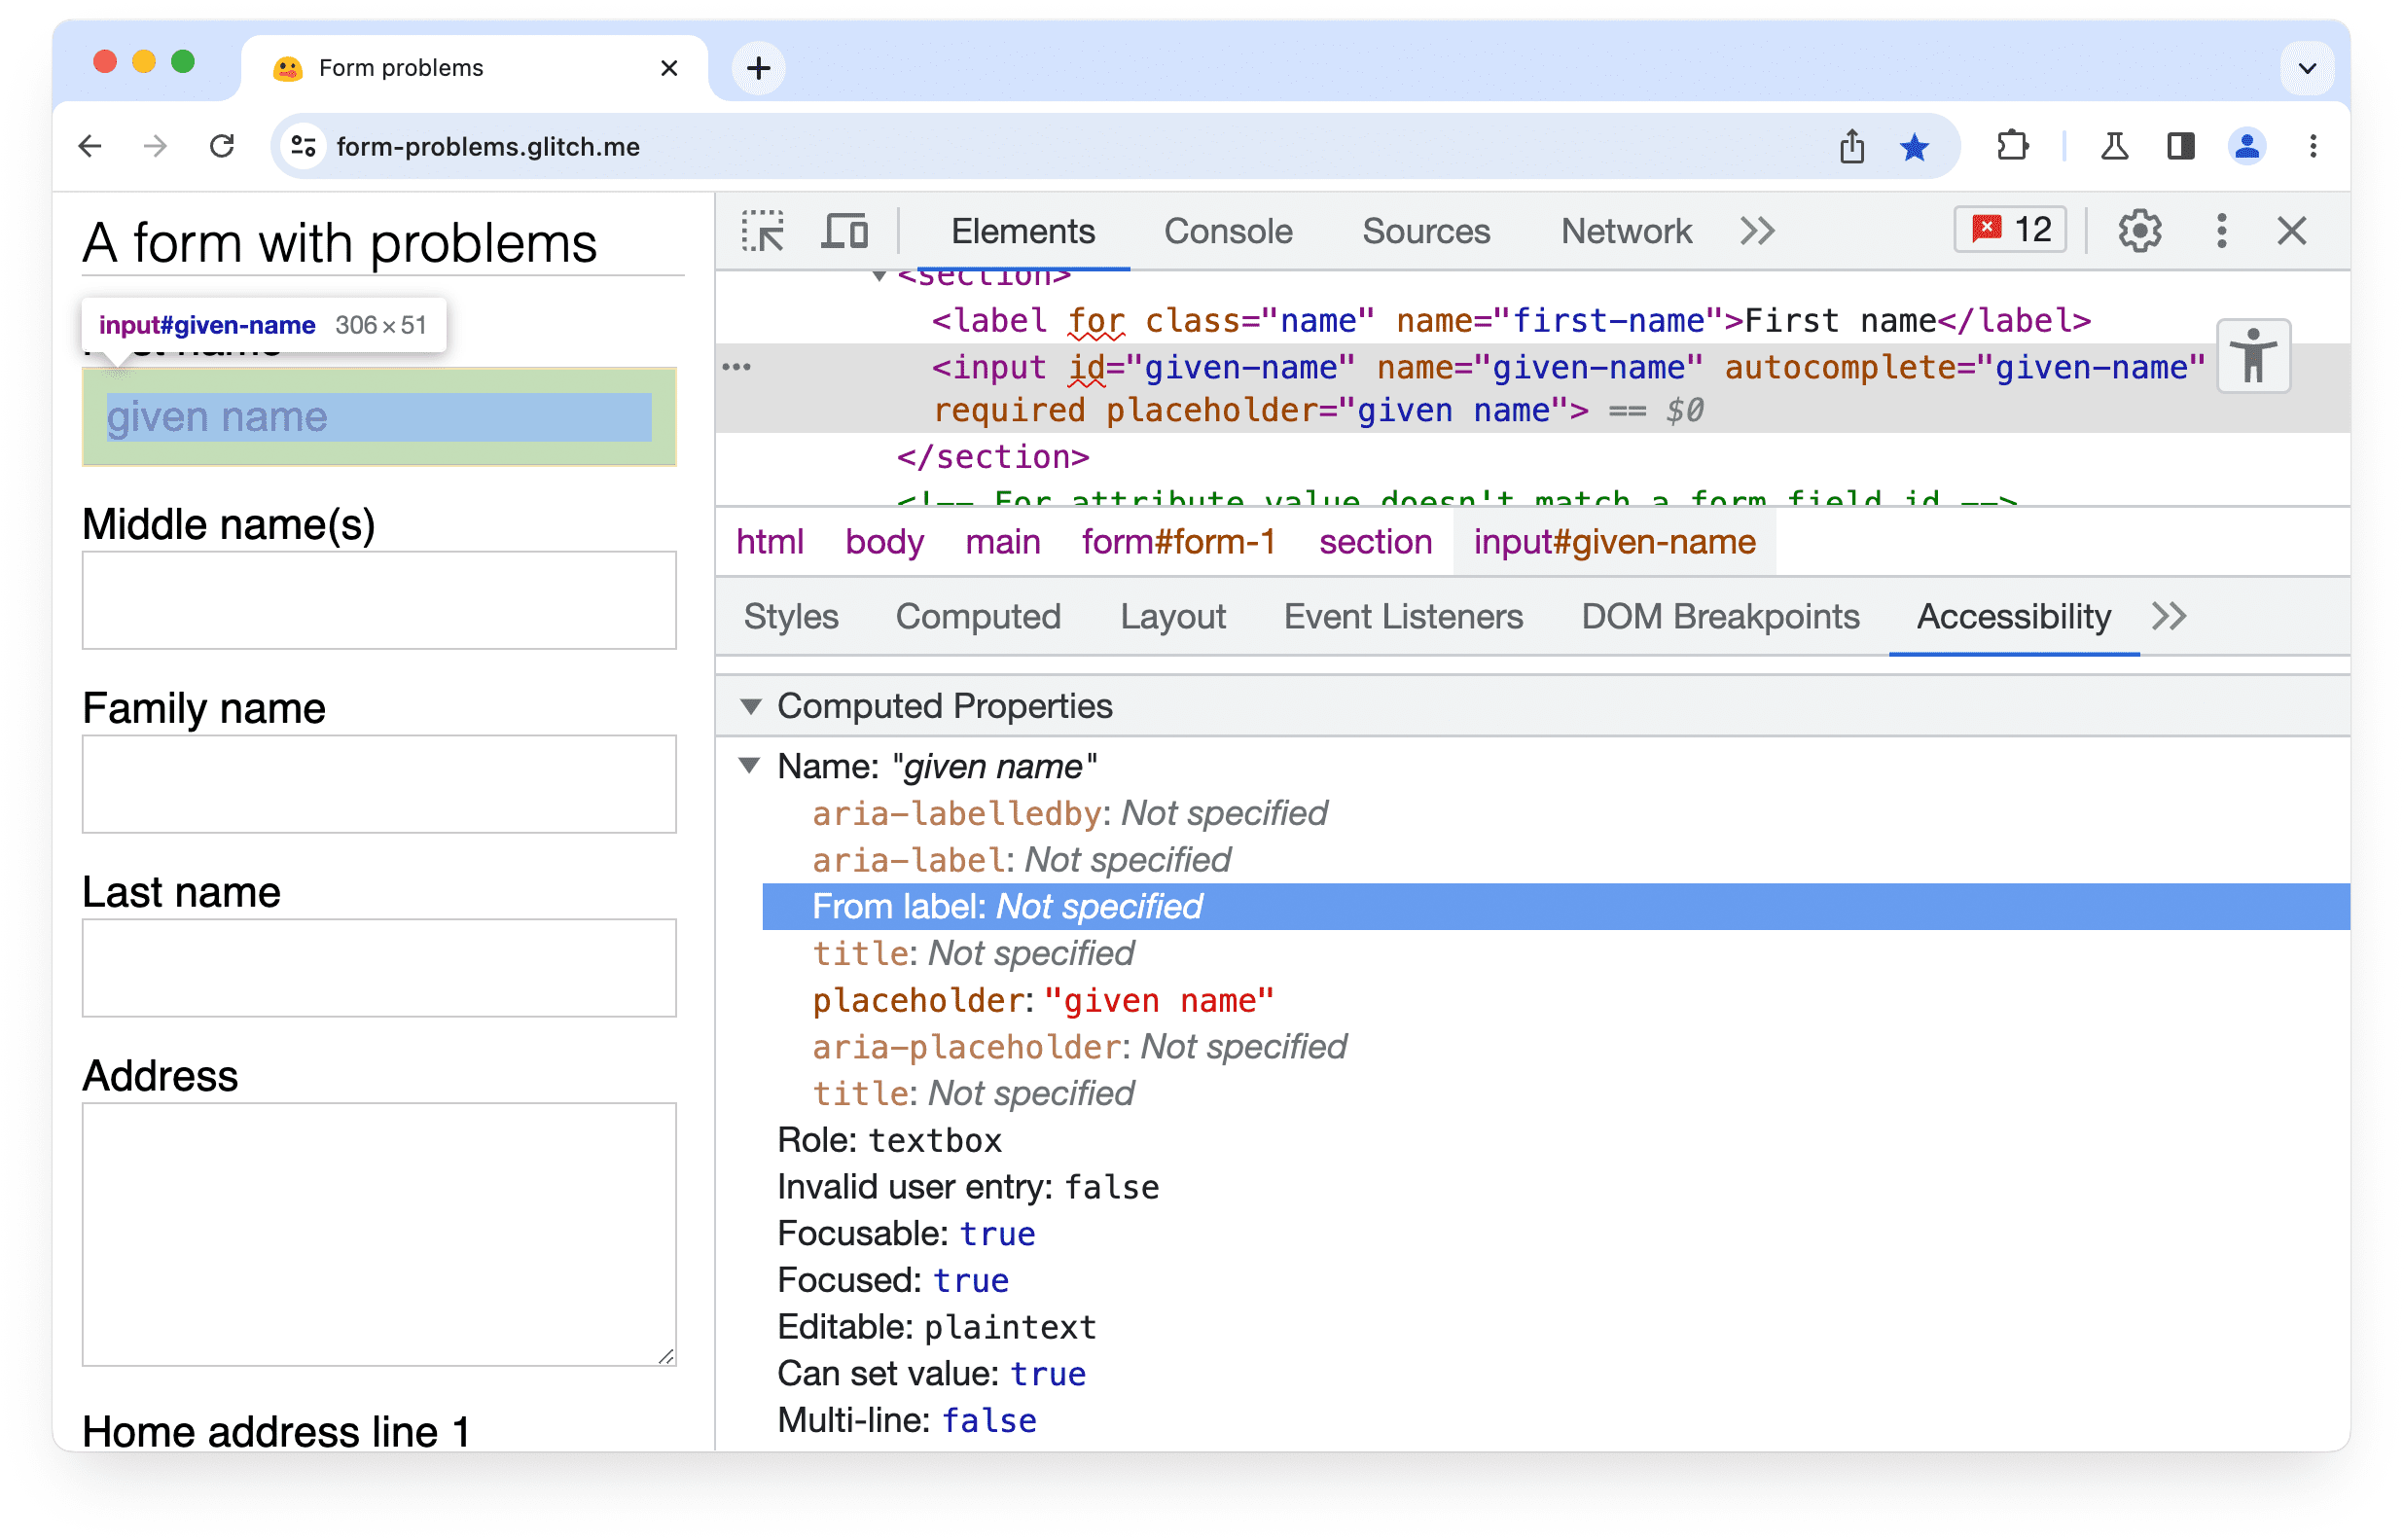 แผงการช่วยเหลือพิเศษใน Chrome DevTools ซึ่งแสดงให้เห็นว่าไม่พบป้ายกำกับที่ตรงกันหรือแอตทริบิวต์ aria-labelledby สำหรับองค์ประกอบอินพุตในแบบฟอร์ม